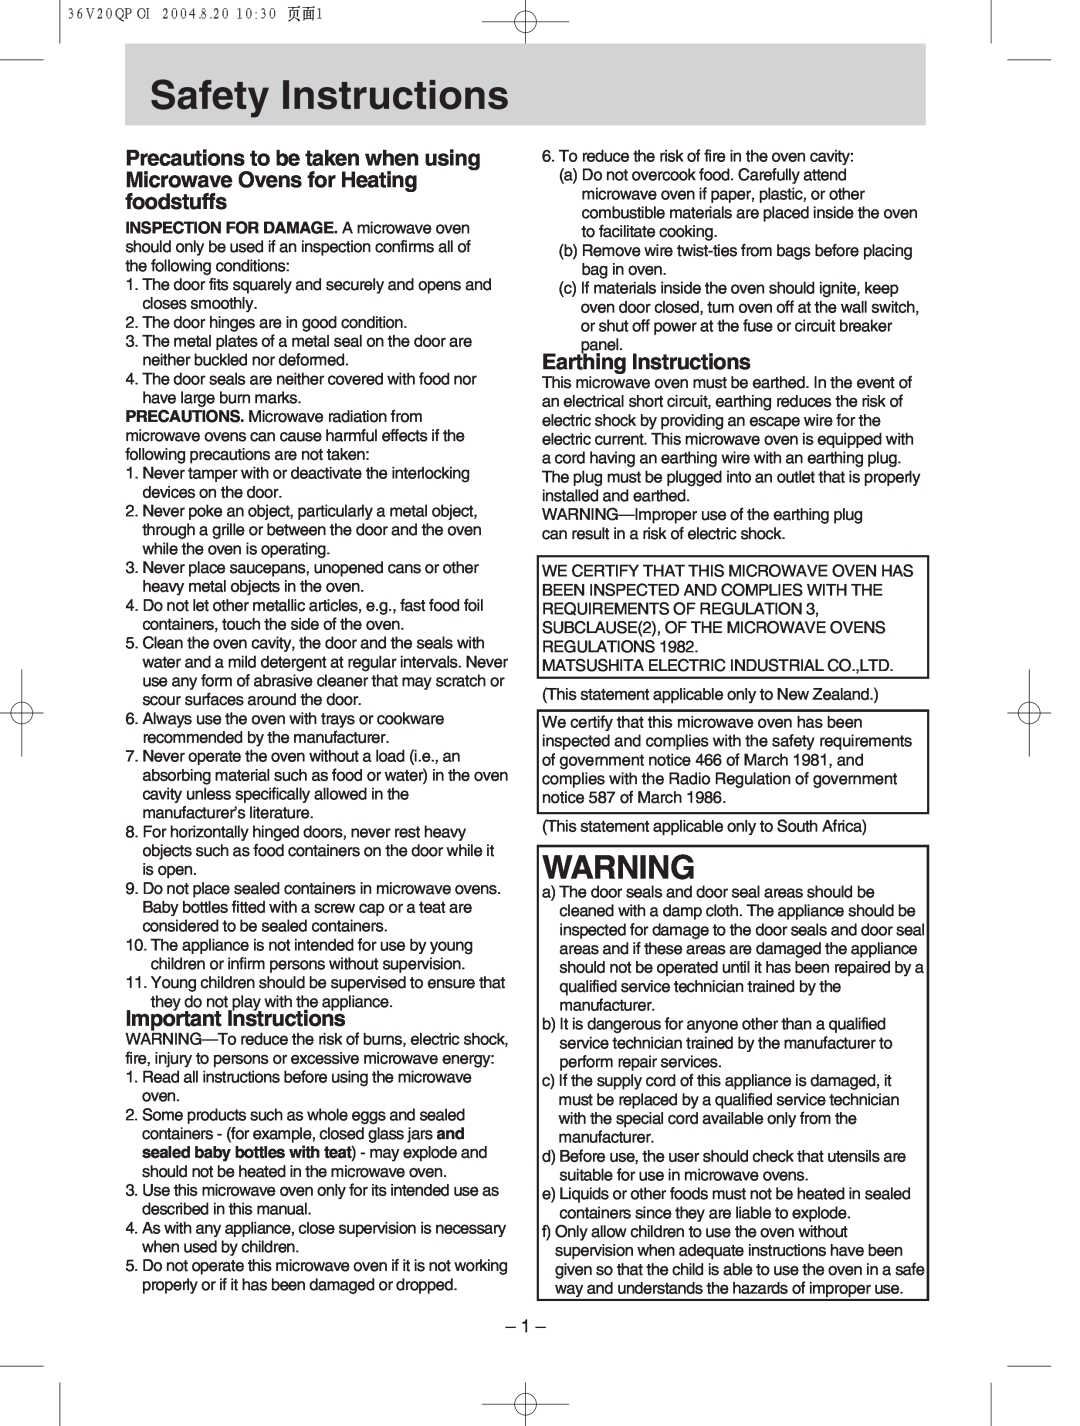 Panasonic NN-S784, NN-T704 manual h Safety Instructions, Important Instructions, Earthing Instructions 